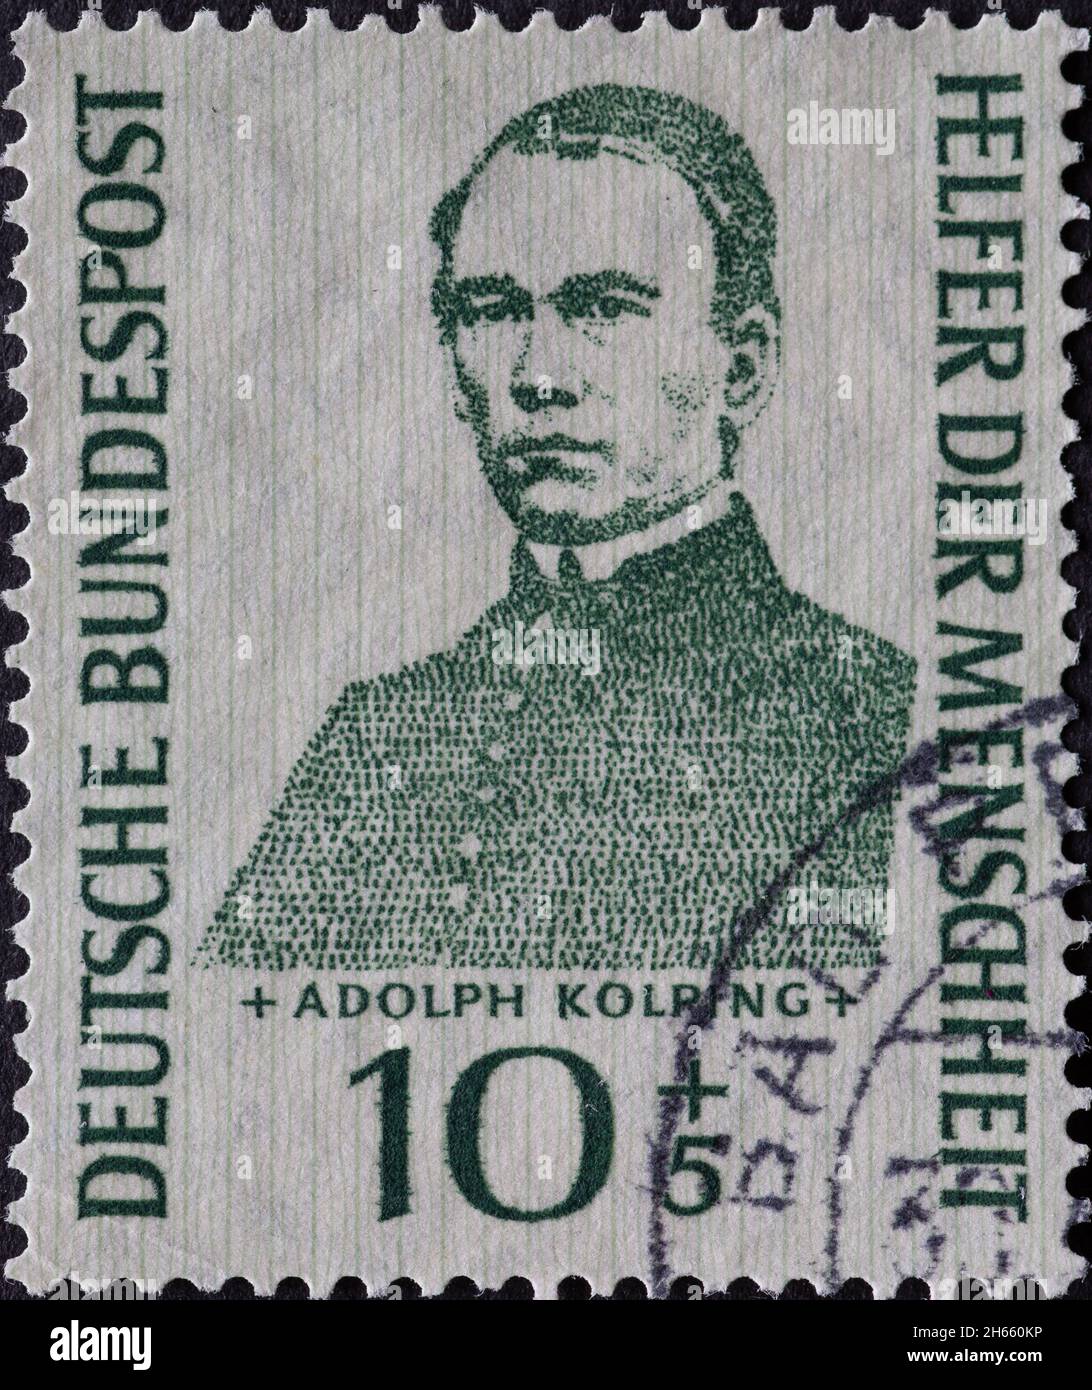 ALLEMAGNE - VERS 1955:ce timbre-poste montre le portrait du prêtre catholique Adolph Kolping né en 1813.Vers 1955 Banque D'Images